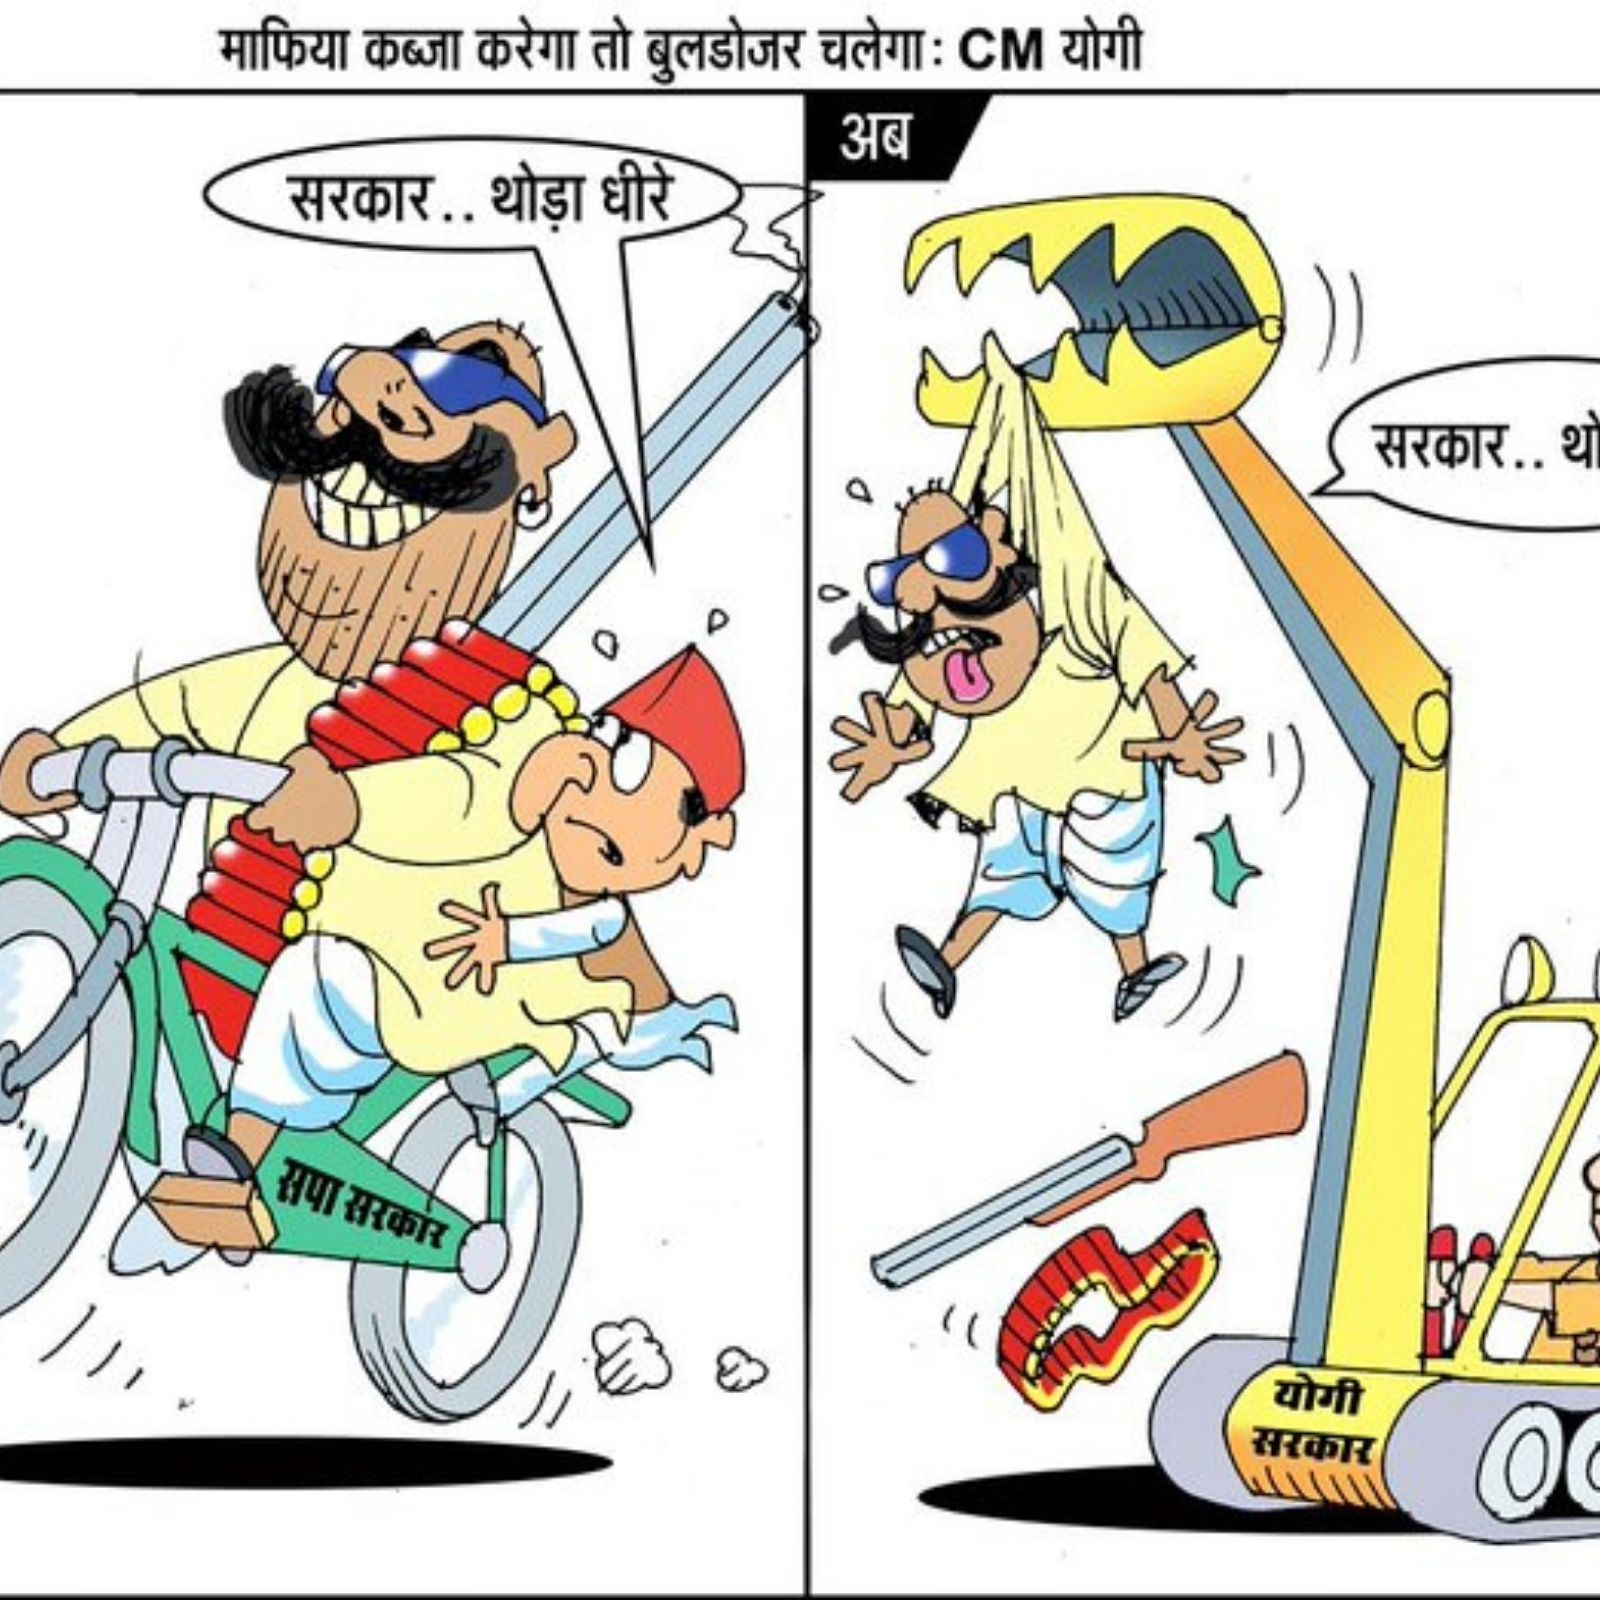 यूपी विधानसभा चुनाव 2022: BJP UP का नया पोस्टर, लिखा- 'माफिया कब्जा करेगा  तो बुलडोजर चलेगा' - up bjp attack samajwadi party over bulldoze cartoon  before up election 2022 upns – News18 हिंदी